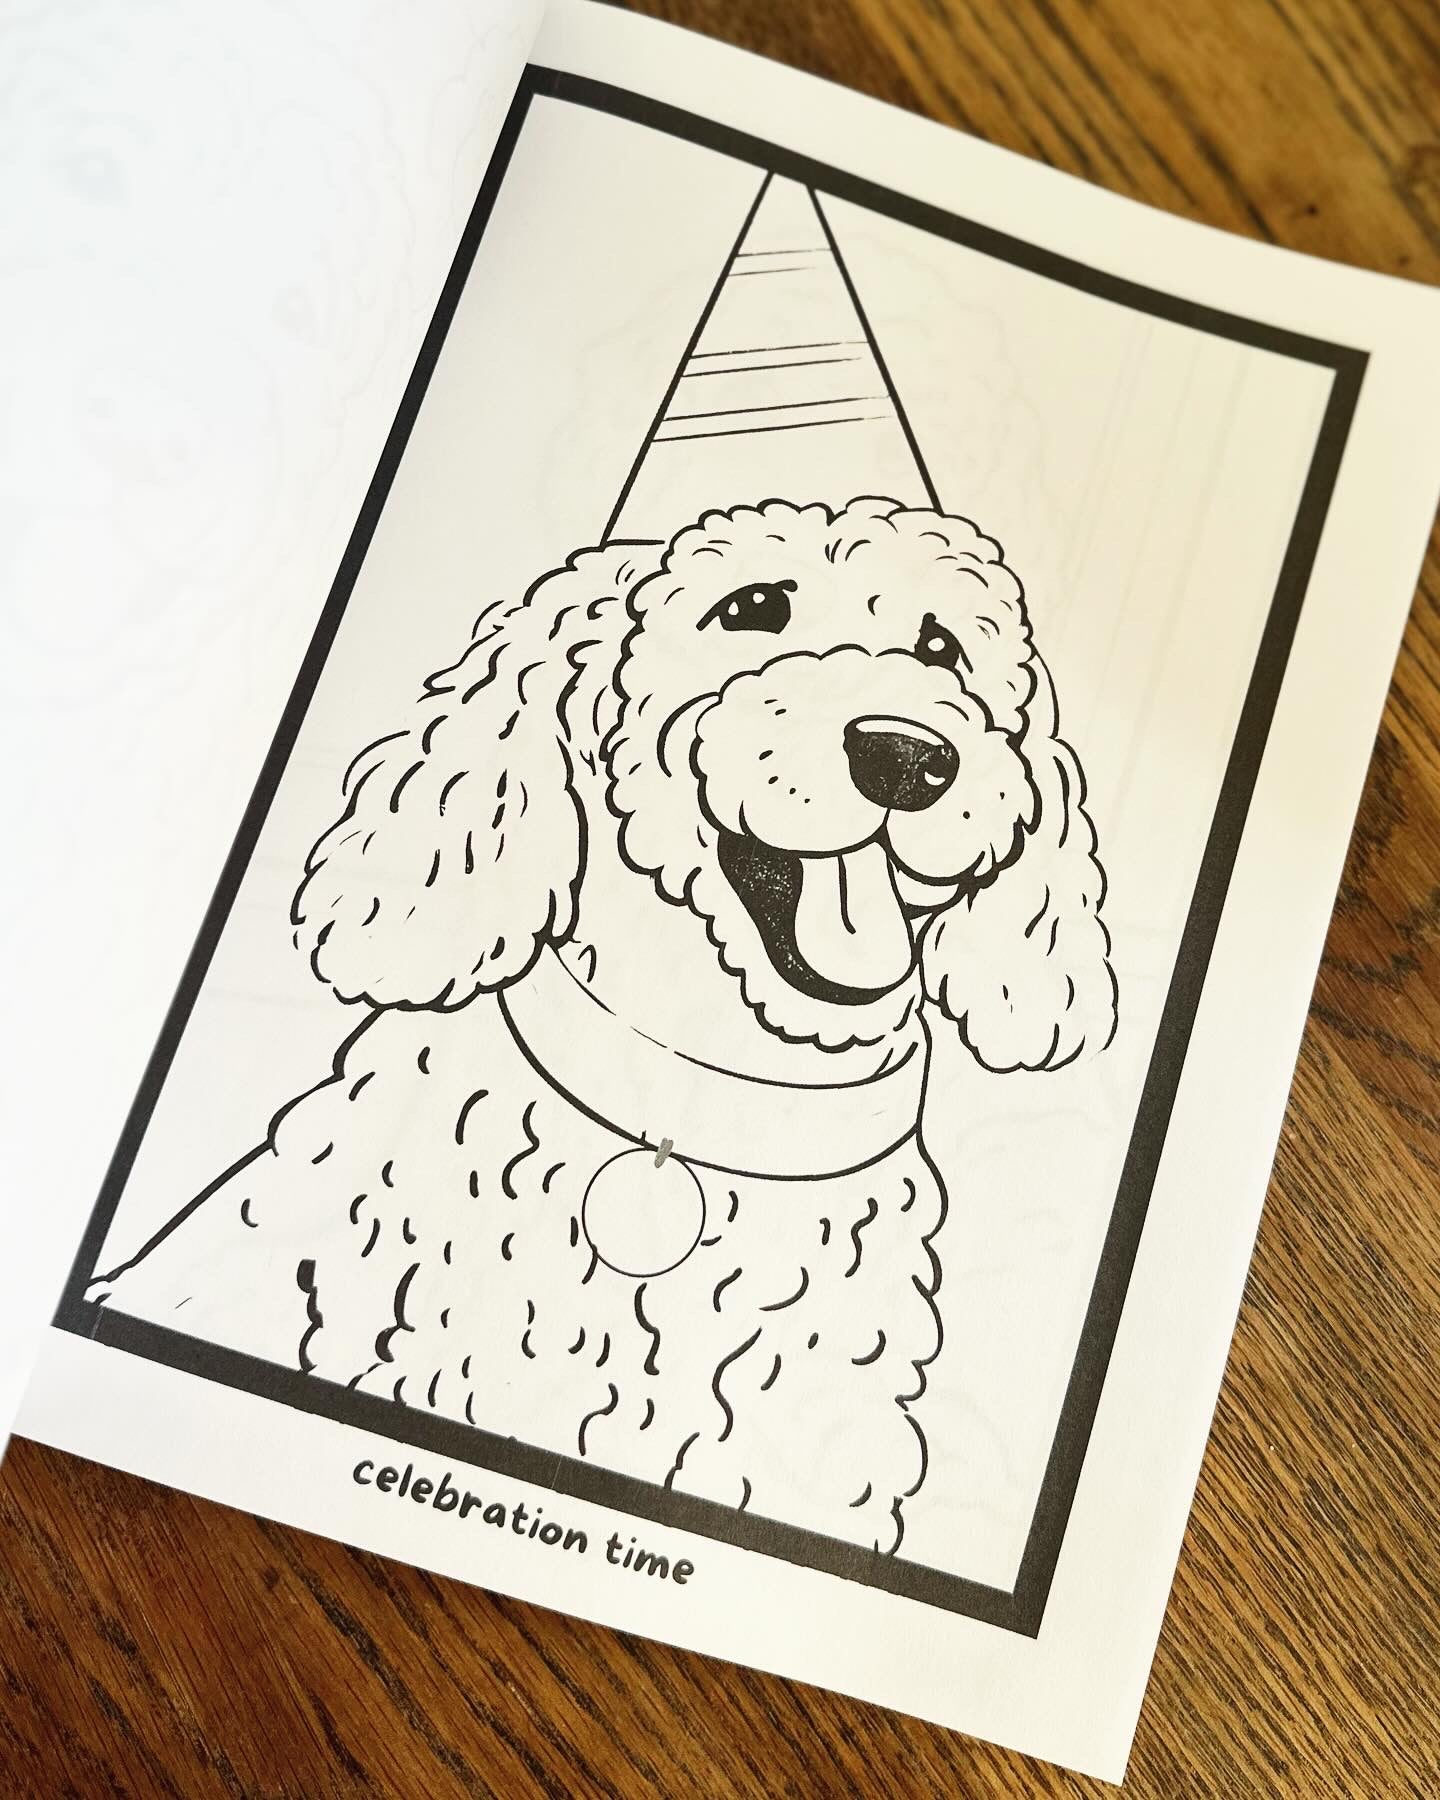 Happy Days Doodletales Coloring Book